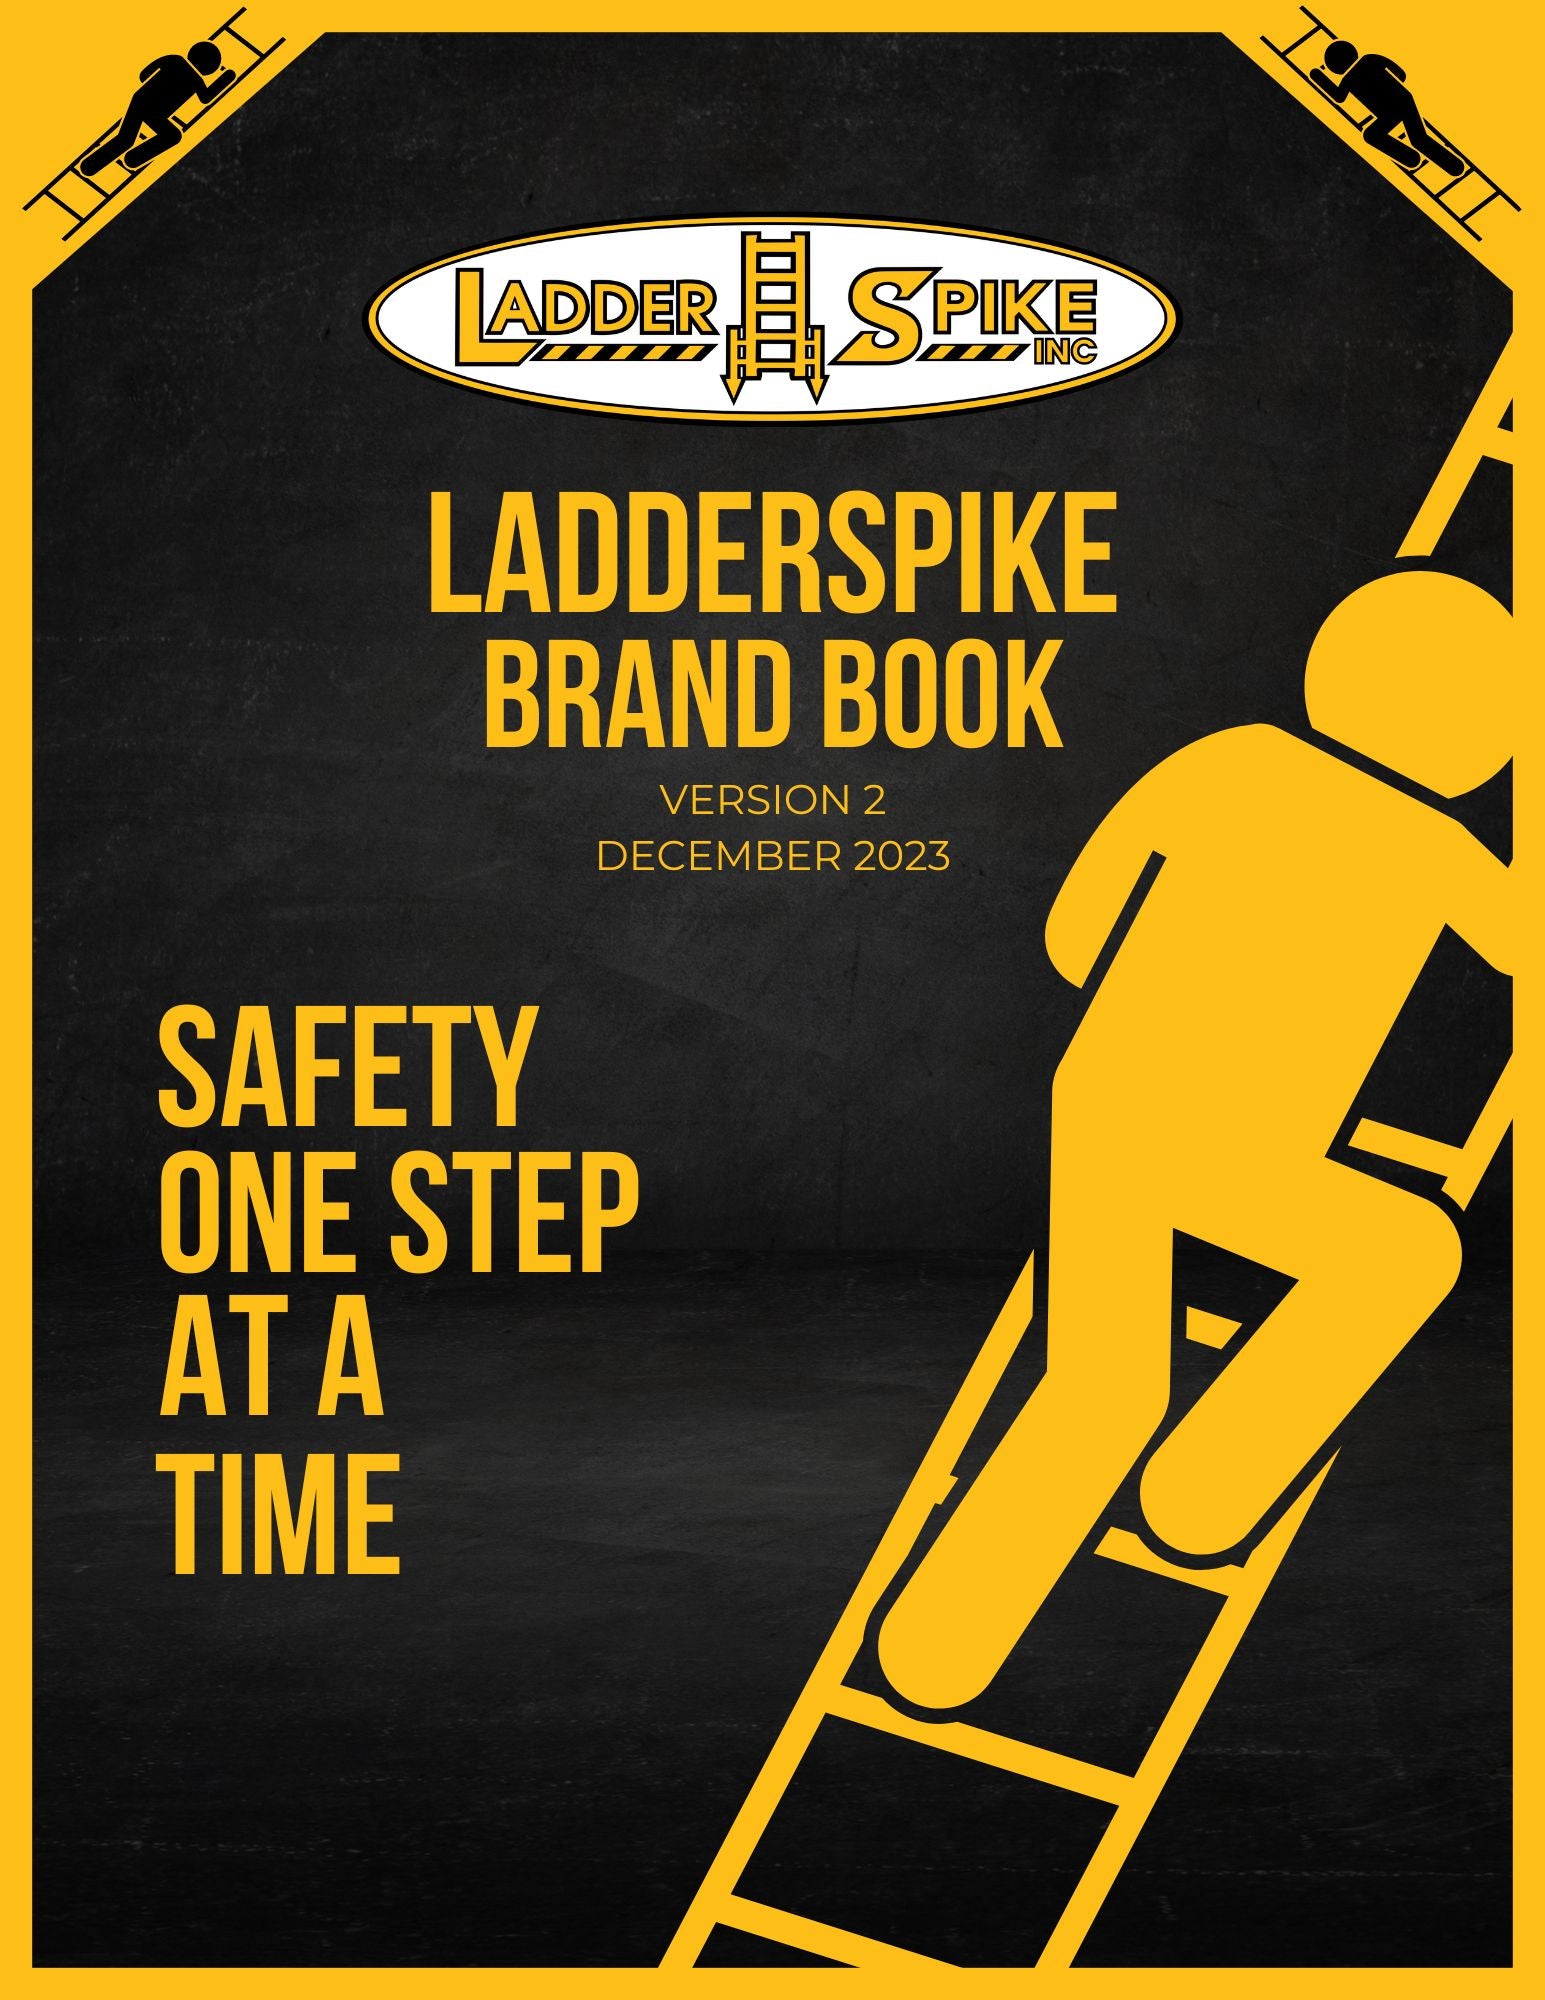 LadderSpike Brand Book